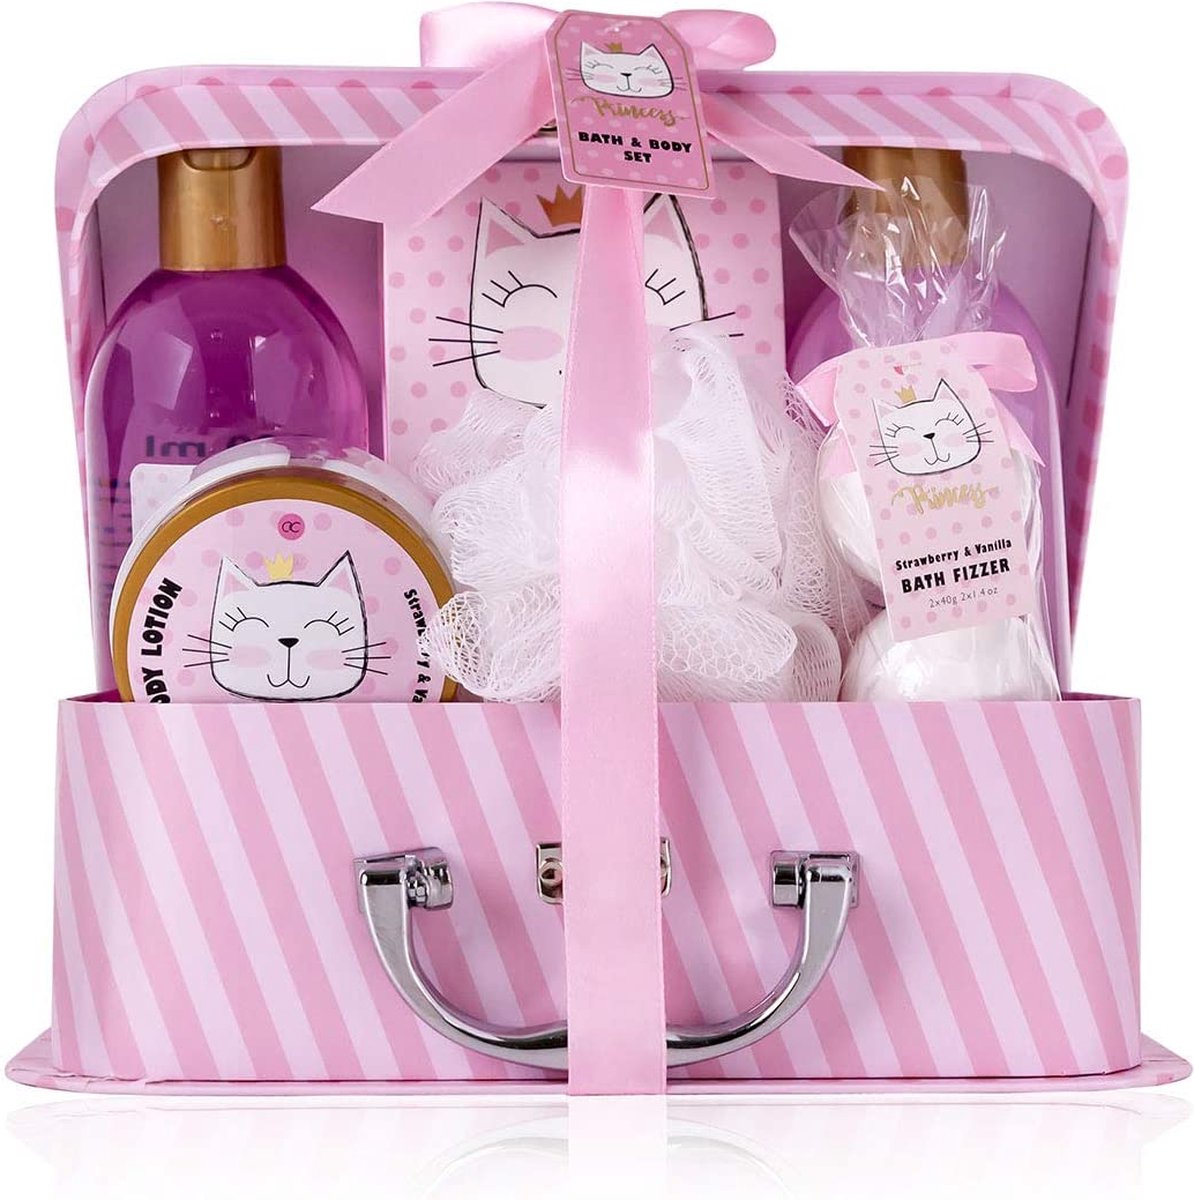 Bougies parfumées vanille fraise Hello Kitty